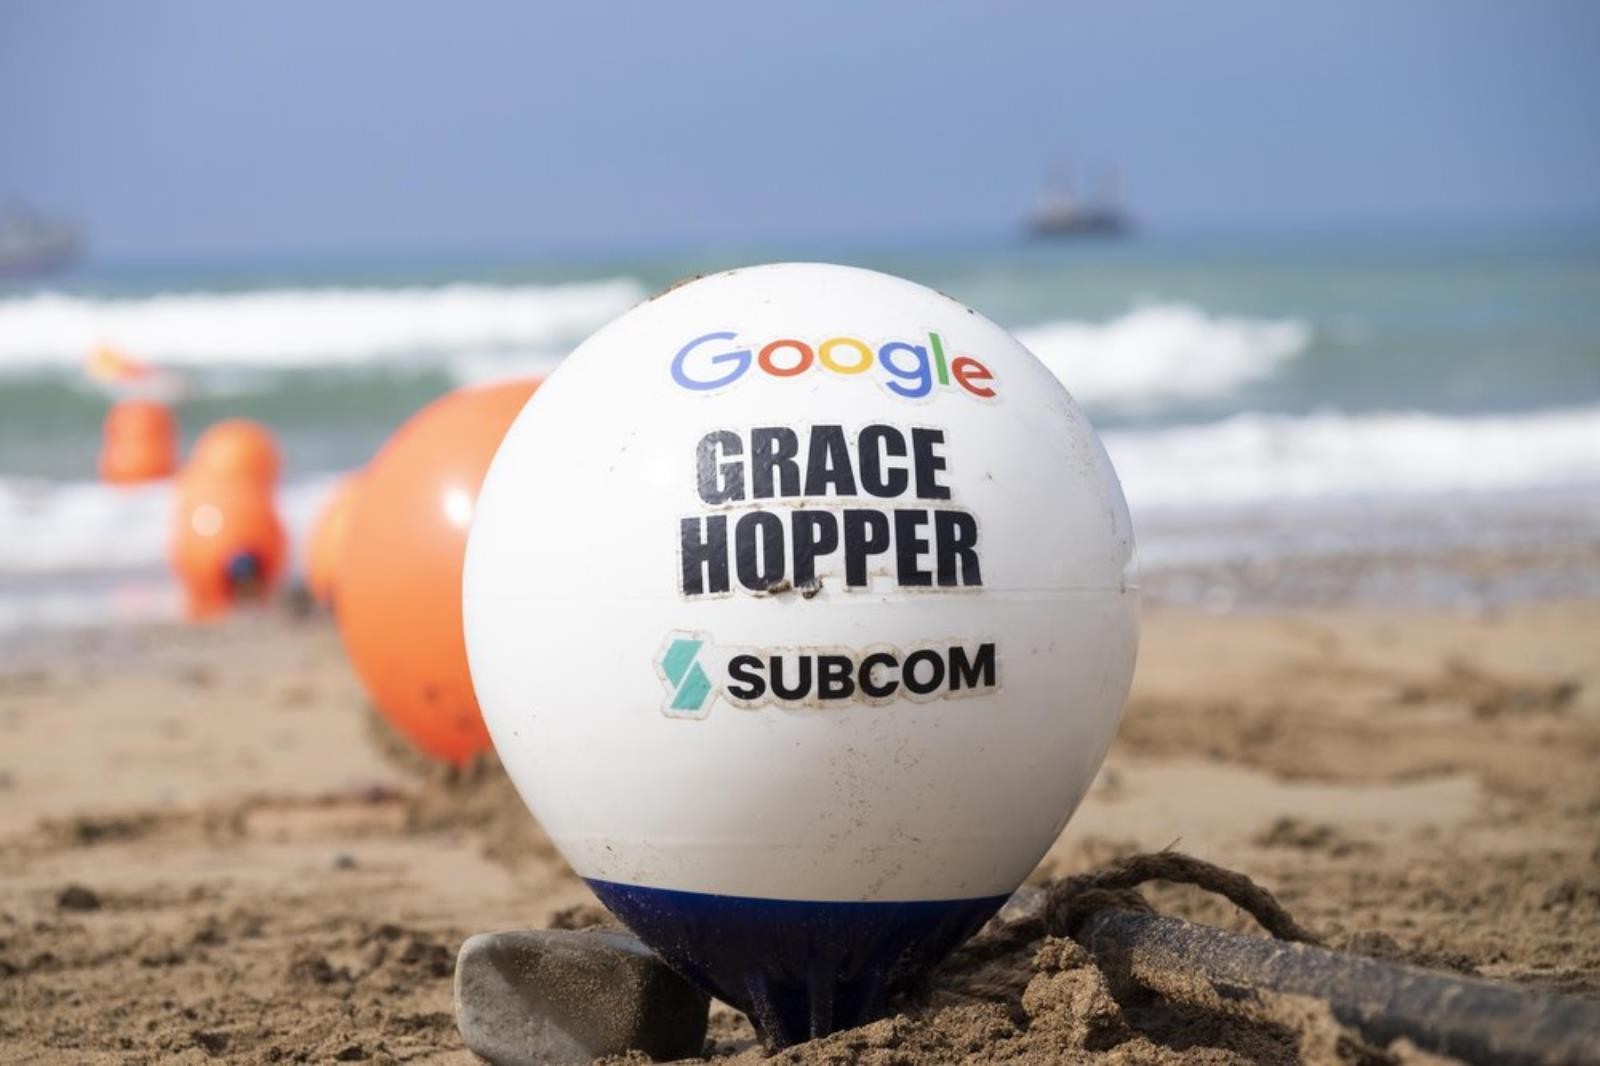 Transatlantycki kabel Google, Grace Hopper ma jedną bolączkę